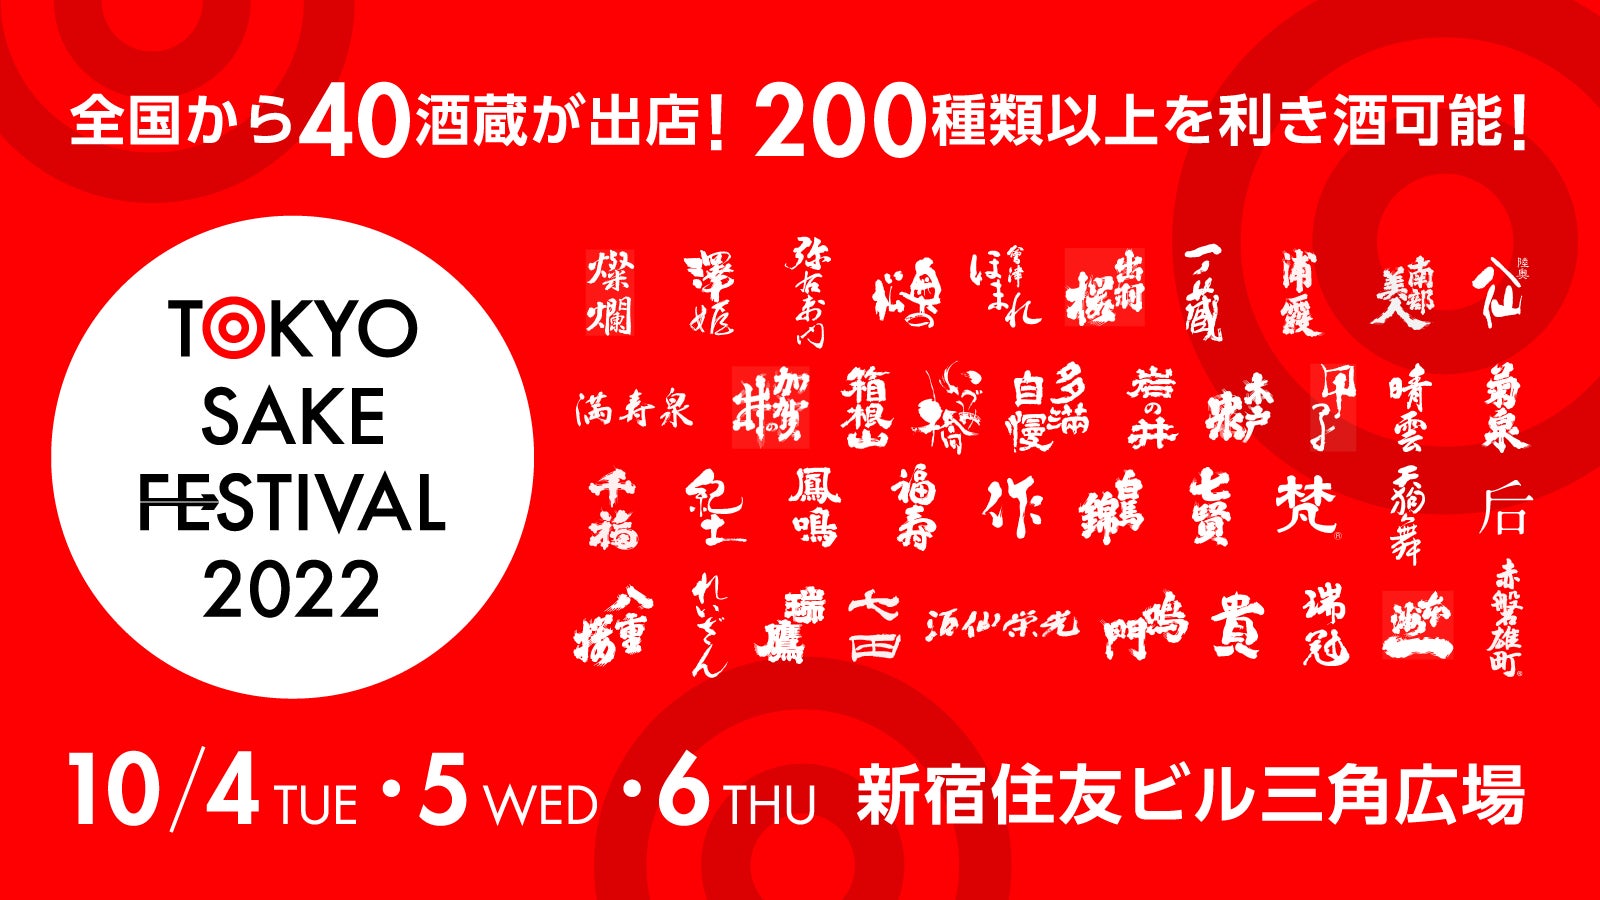 日本最大級の酒フェス「TOKYO SAKE FESTIVAL」開催。元NMB48・高野祐衣が公式アンバサダーに就任。